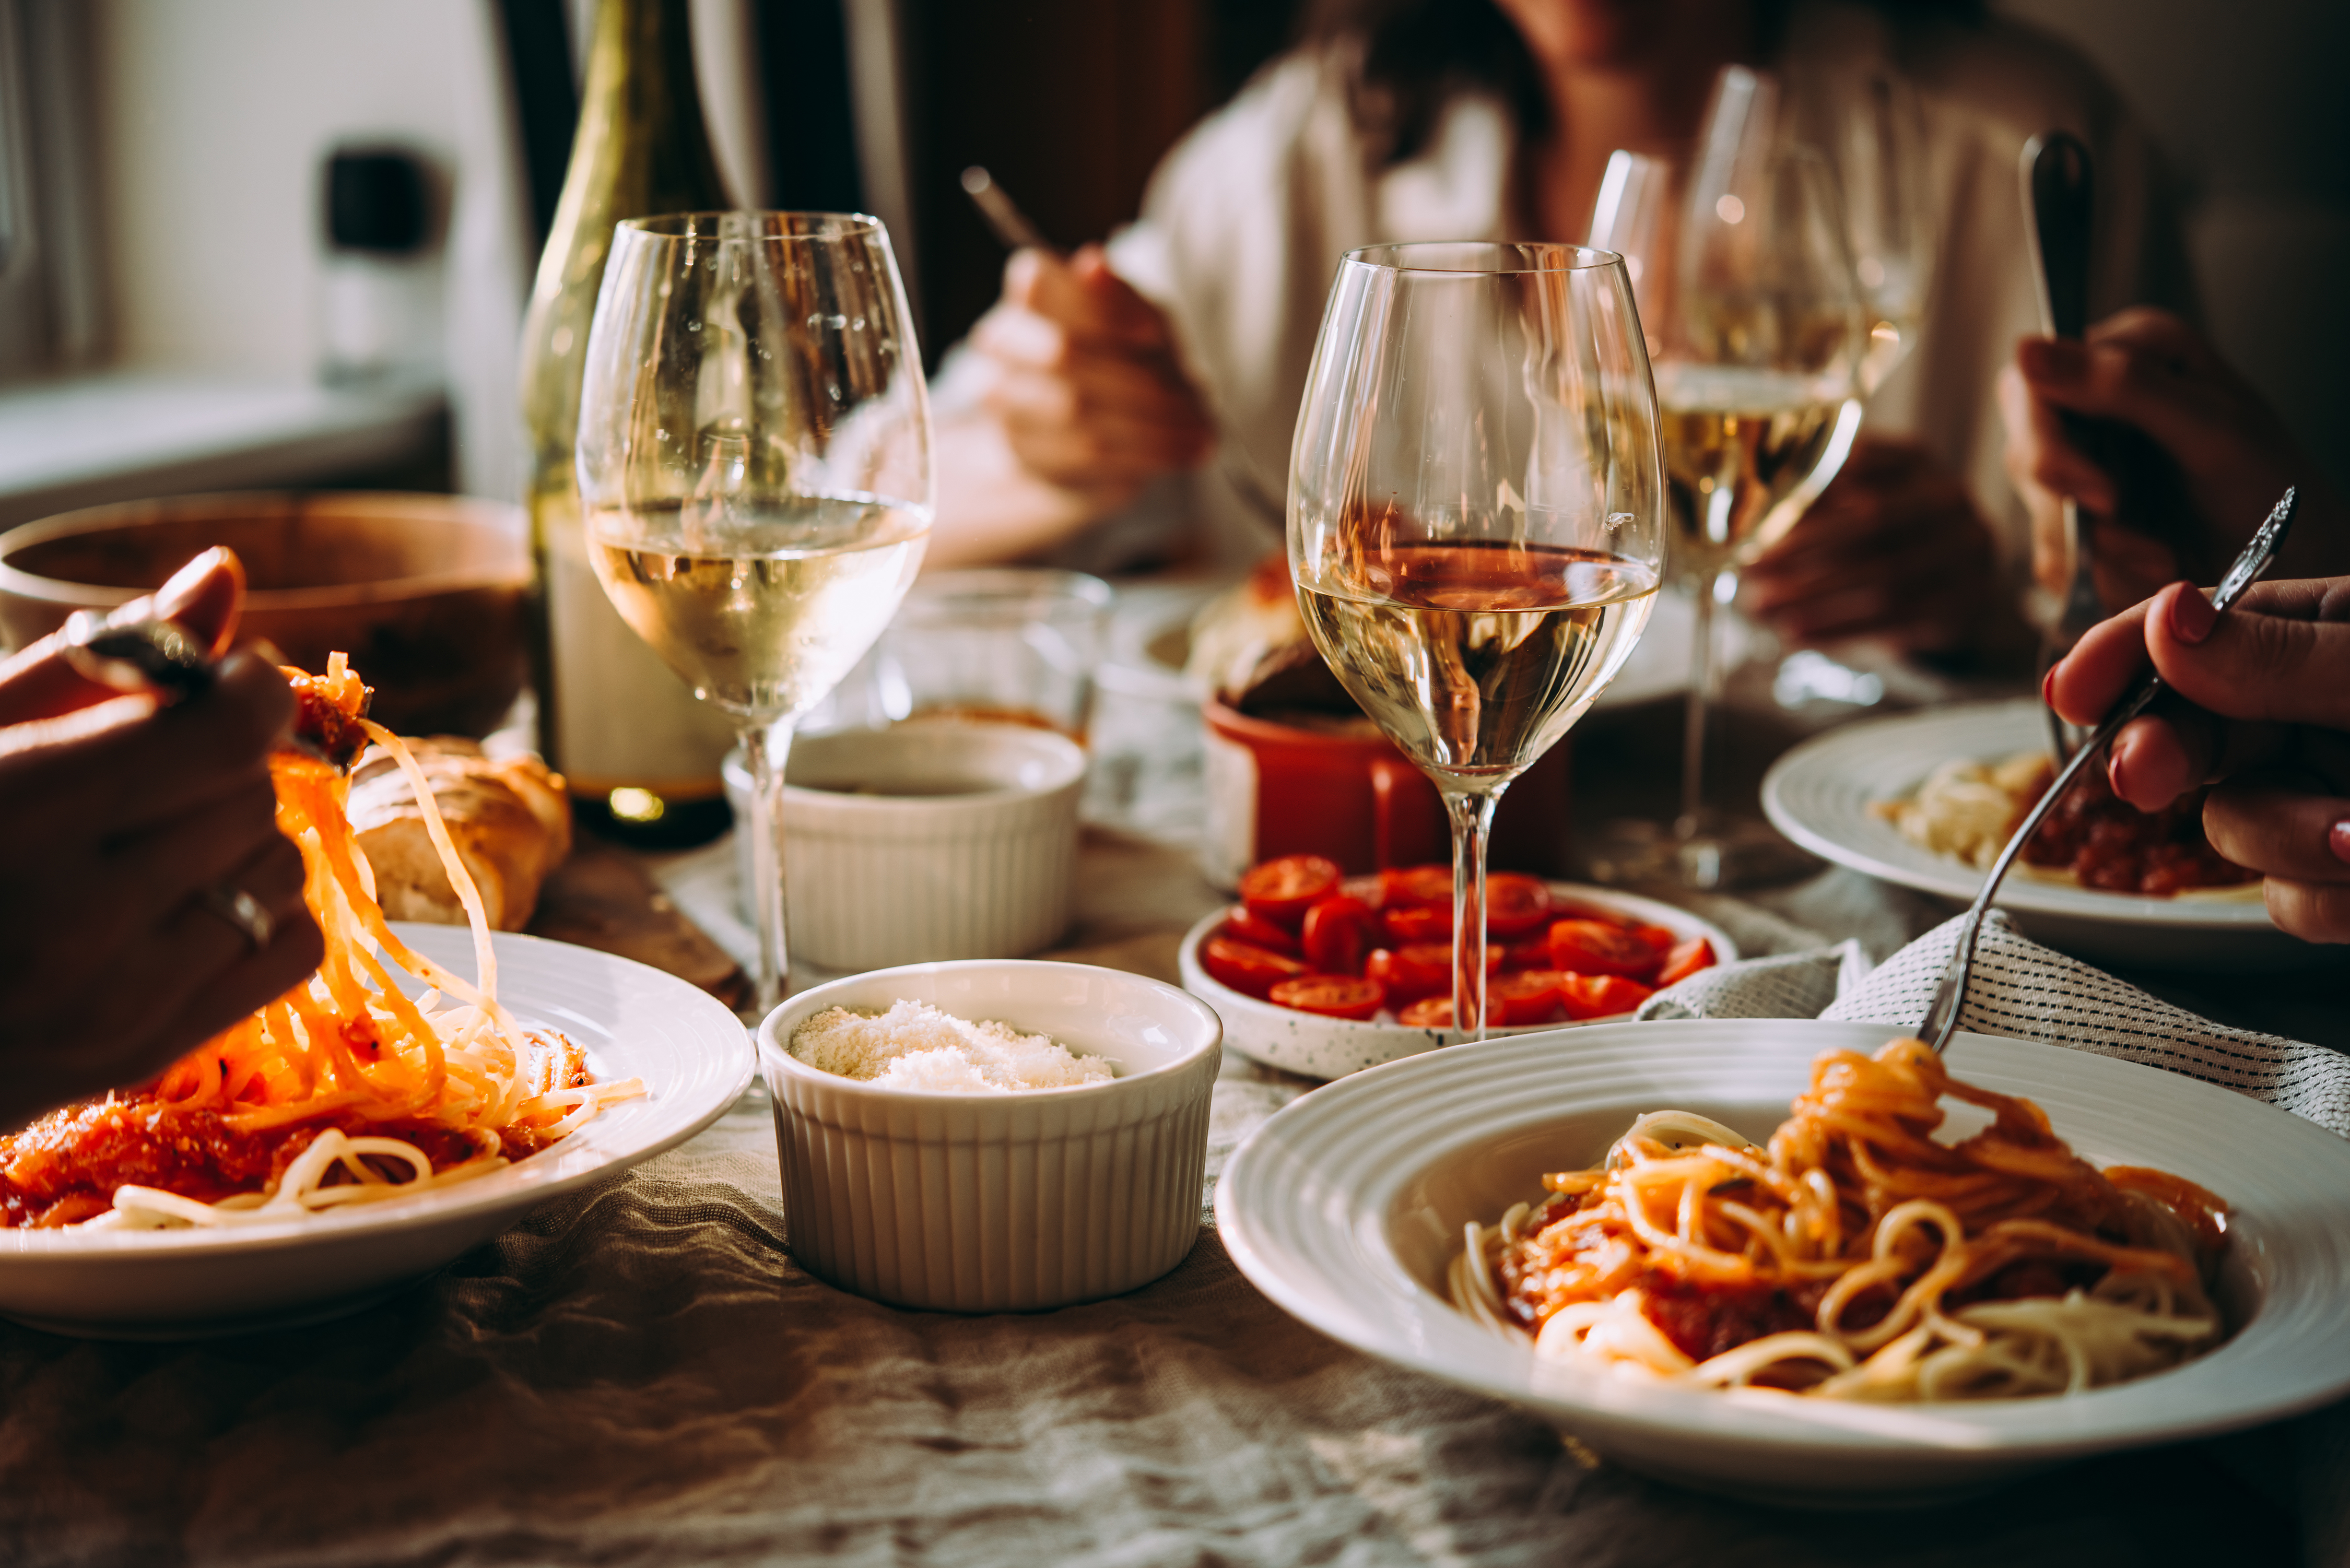 Friends having a pasta dinner | Source: Shutterstock